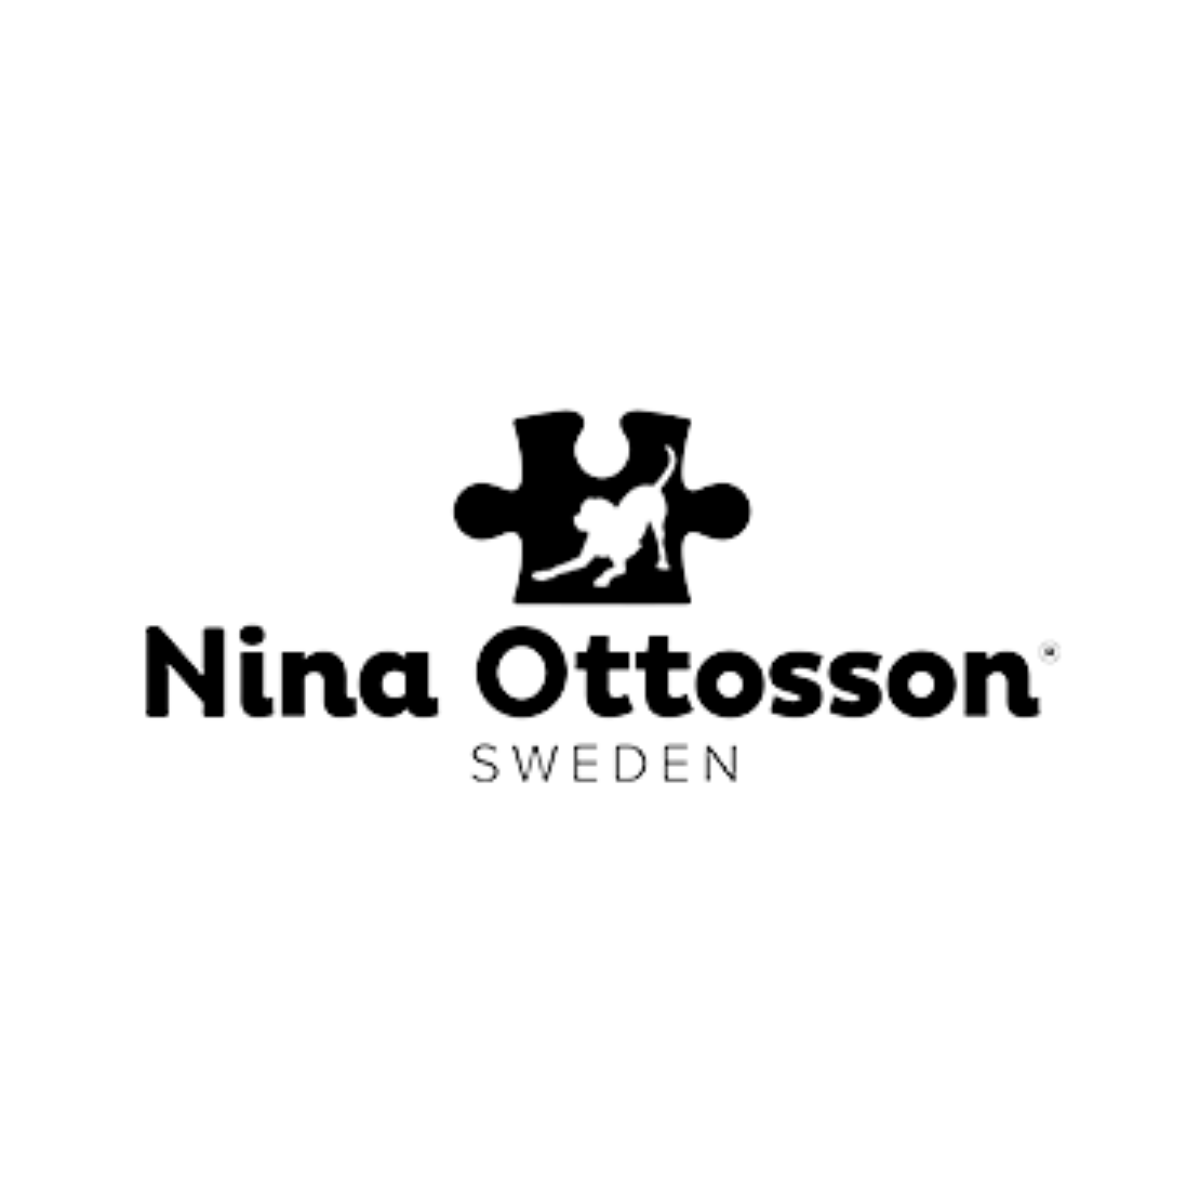 Nina Ottosson